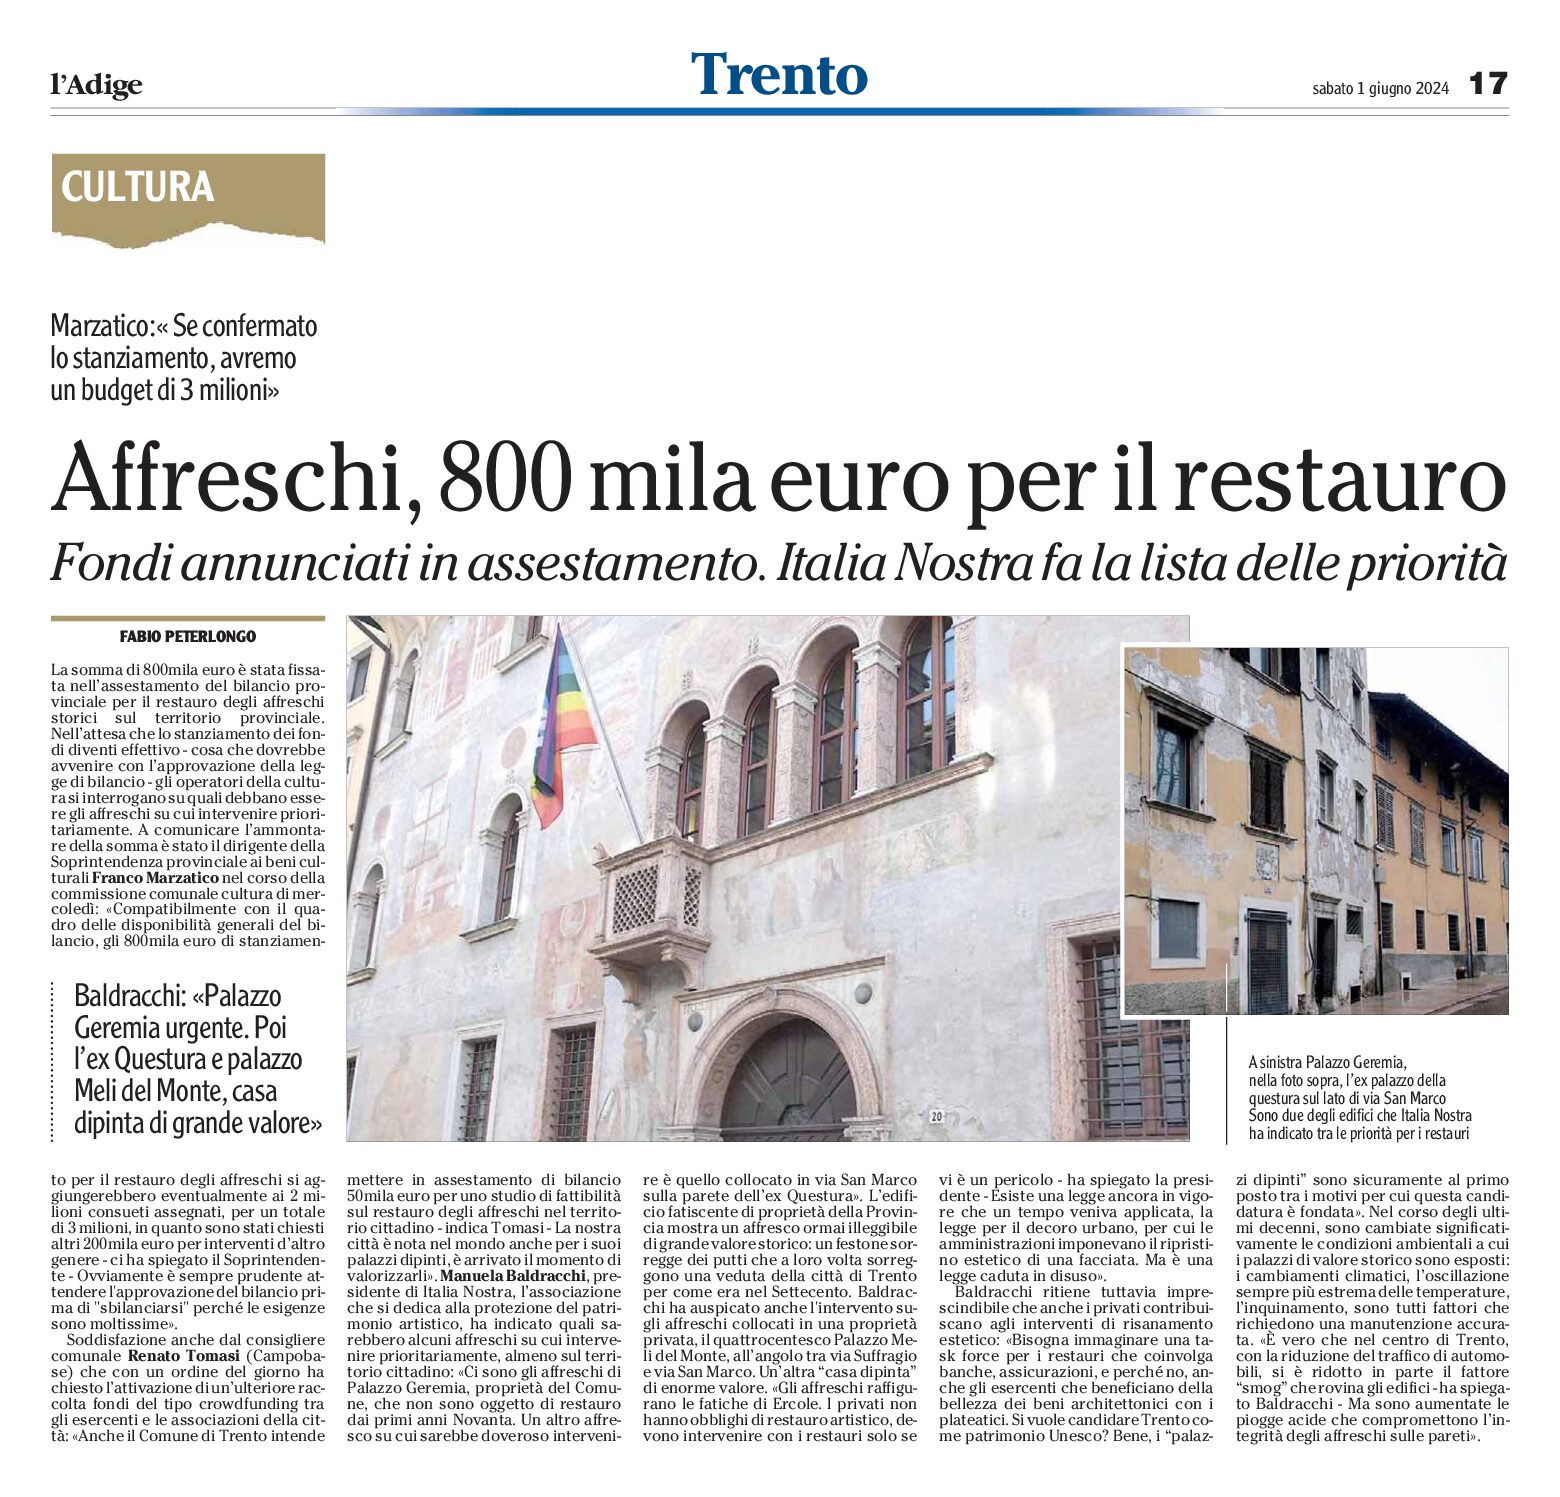 Trento, affreschi: Italia Nostra fa la lista delle priorità per il restauro